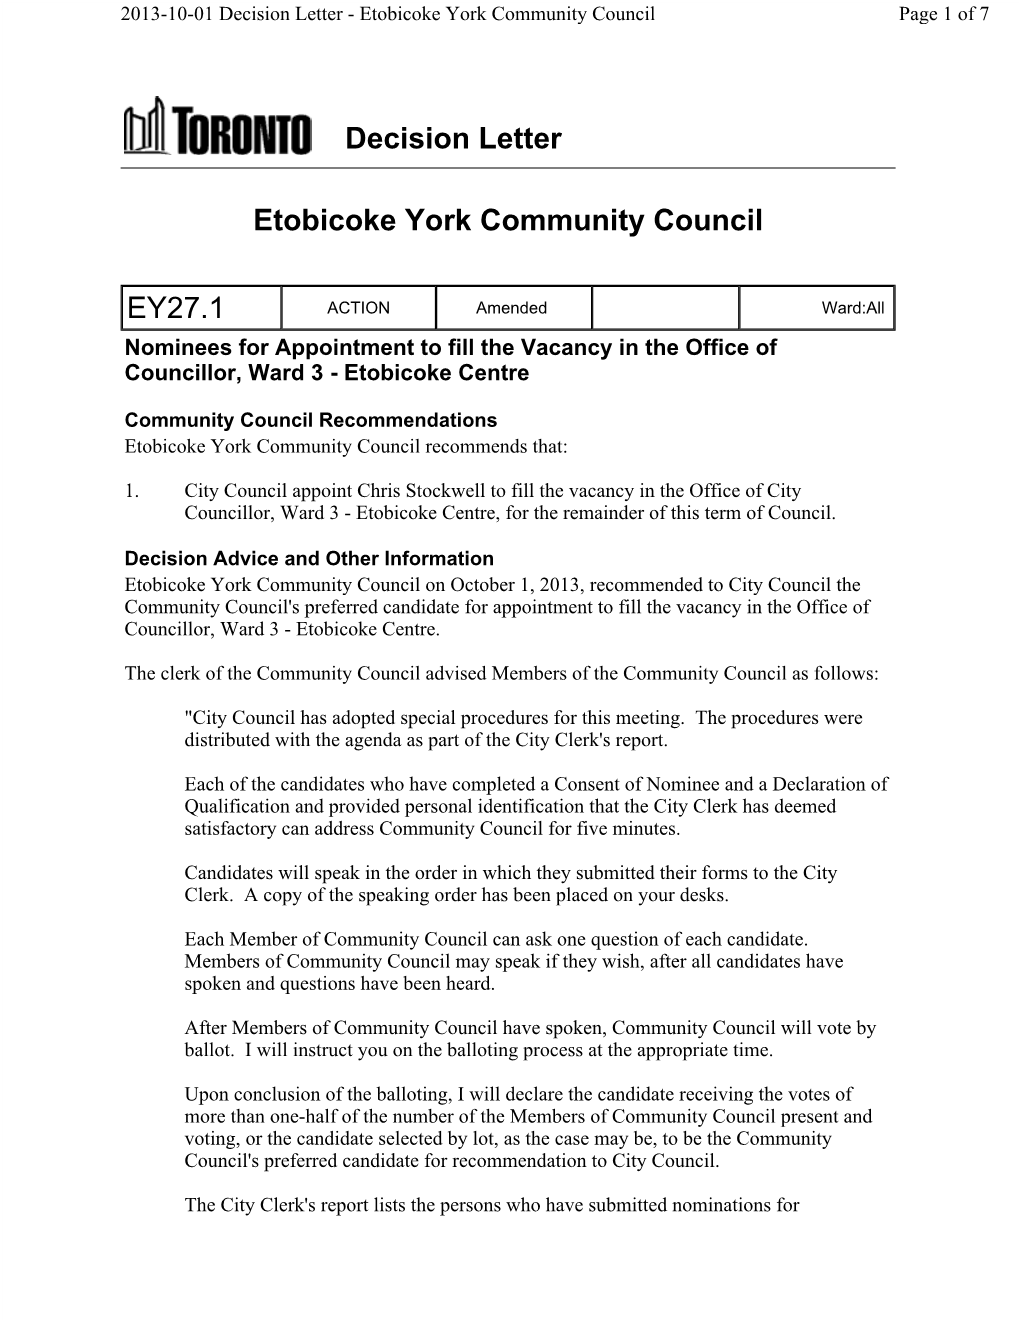 Decision Letter Etobicoke York Community Council EY27.1